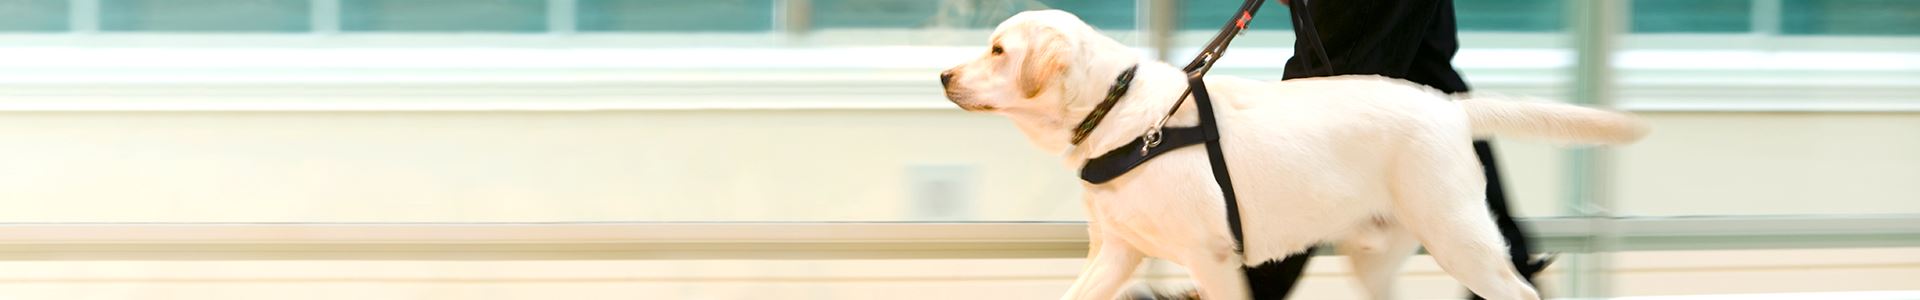 Cane Labrador beige di profilo, con pettorina nera, che sta camminando a fianco di una persona che indossa dei pantaloni neri, della quale si vedono solo le gambe e la mano che tiene la pettorina.